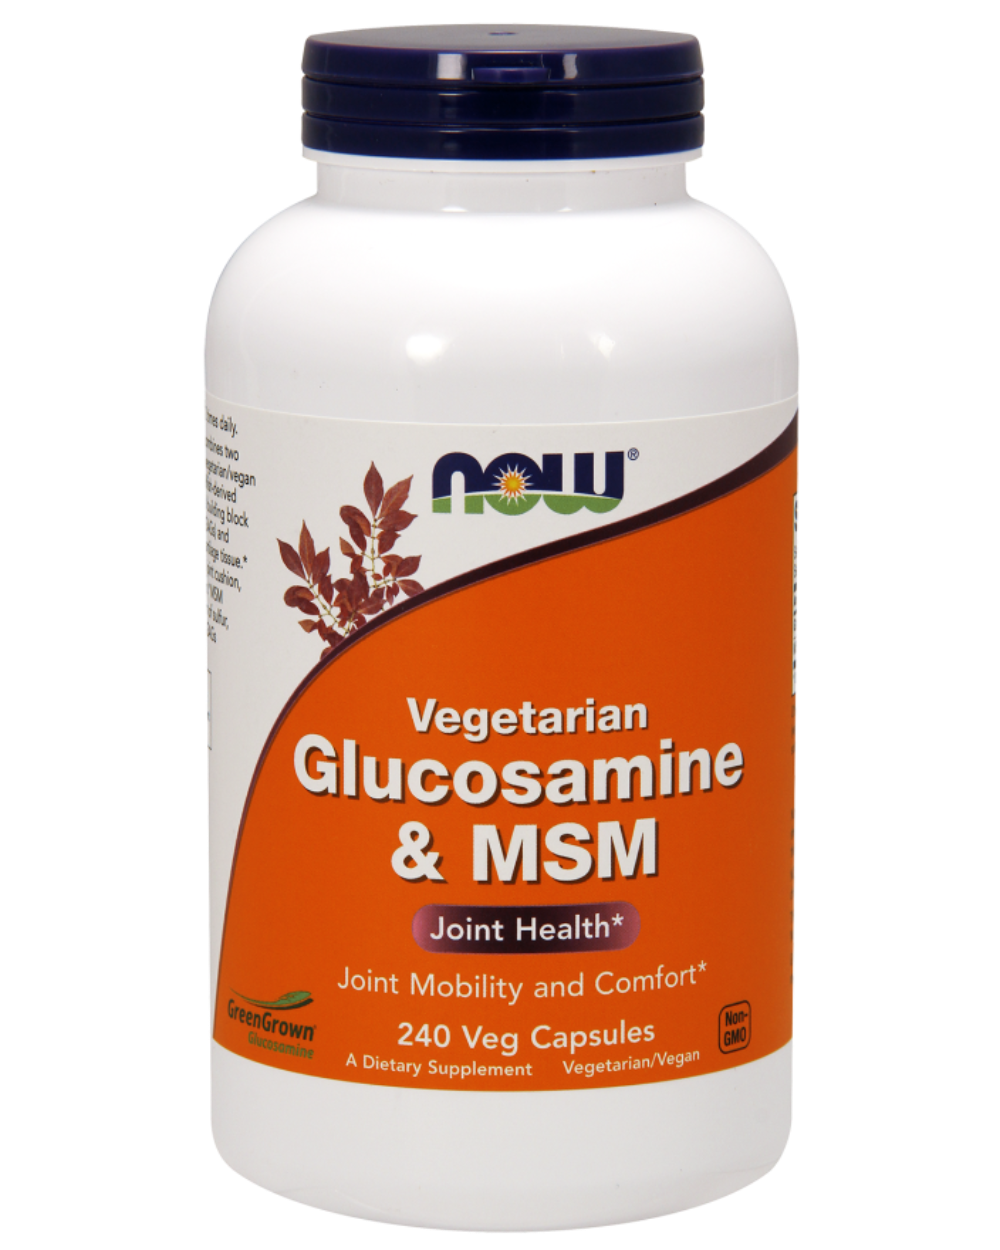 Veg. Glucosamine Msm LG.